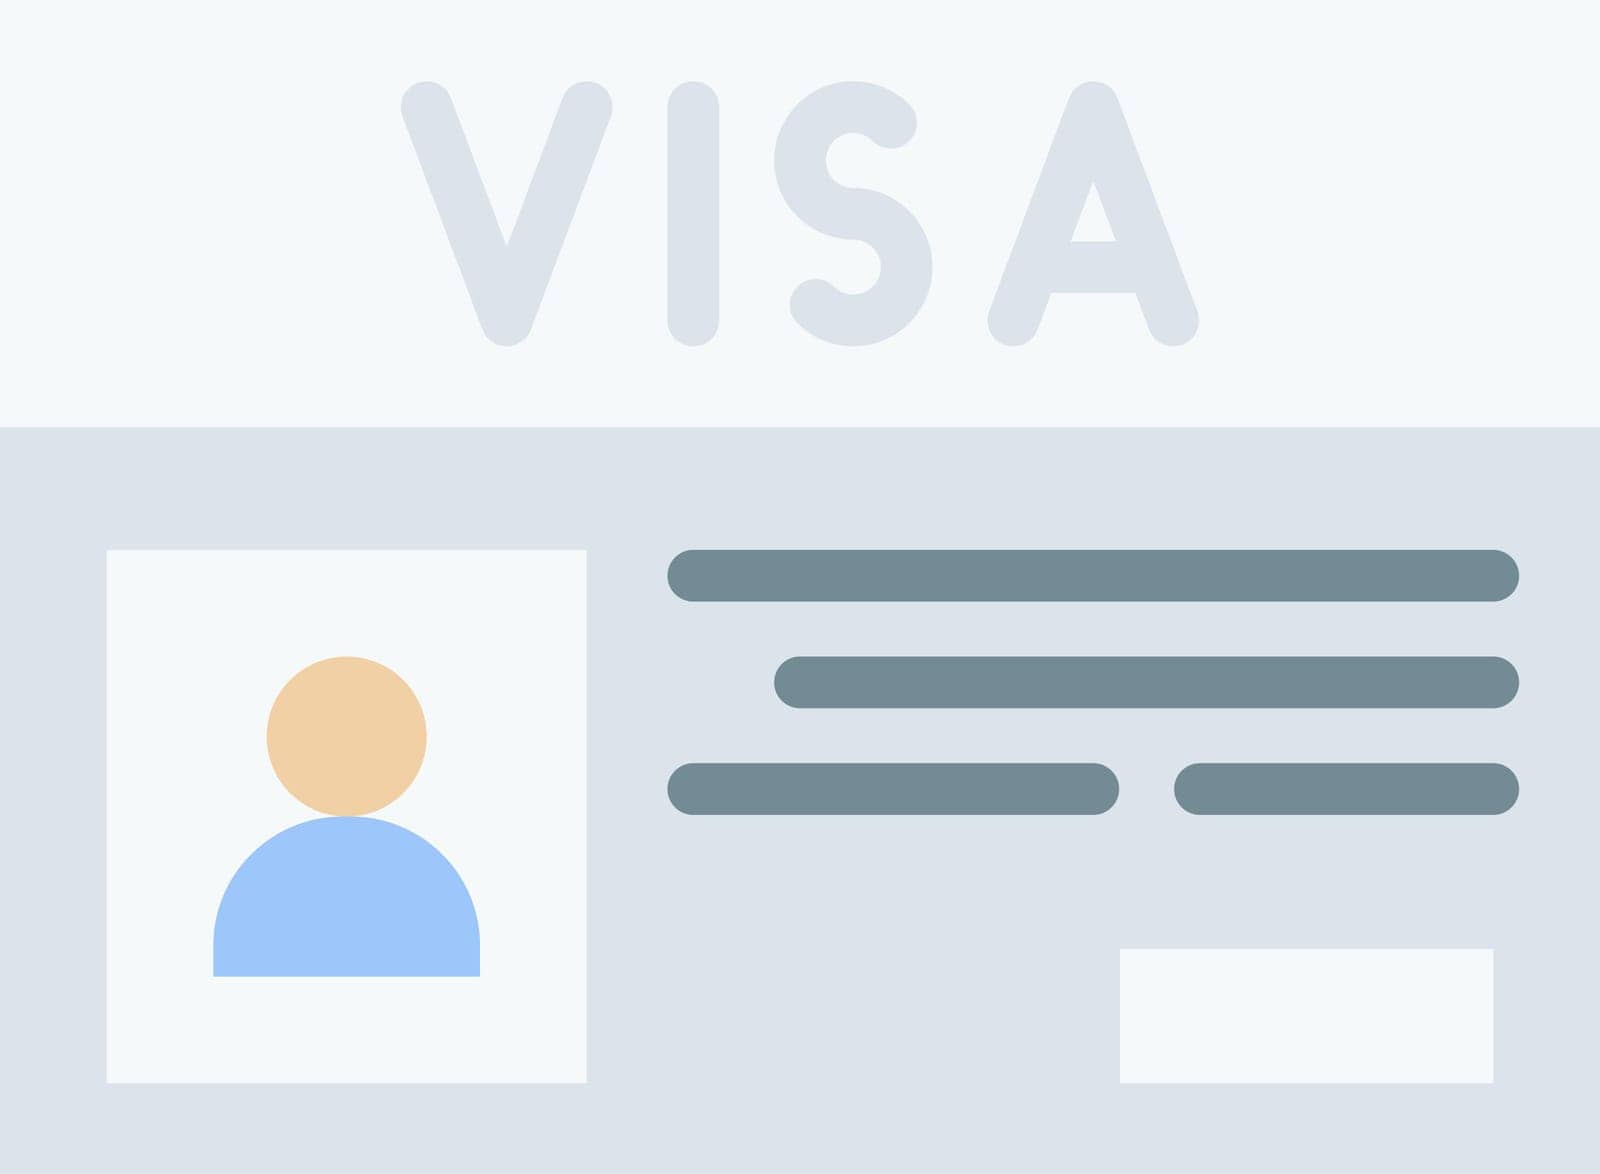 Visa Icon Image. by ICONBUNNY